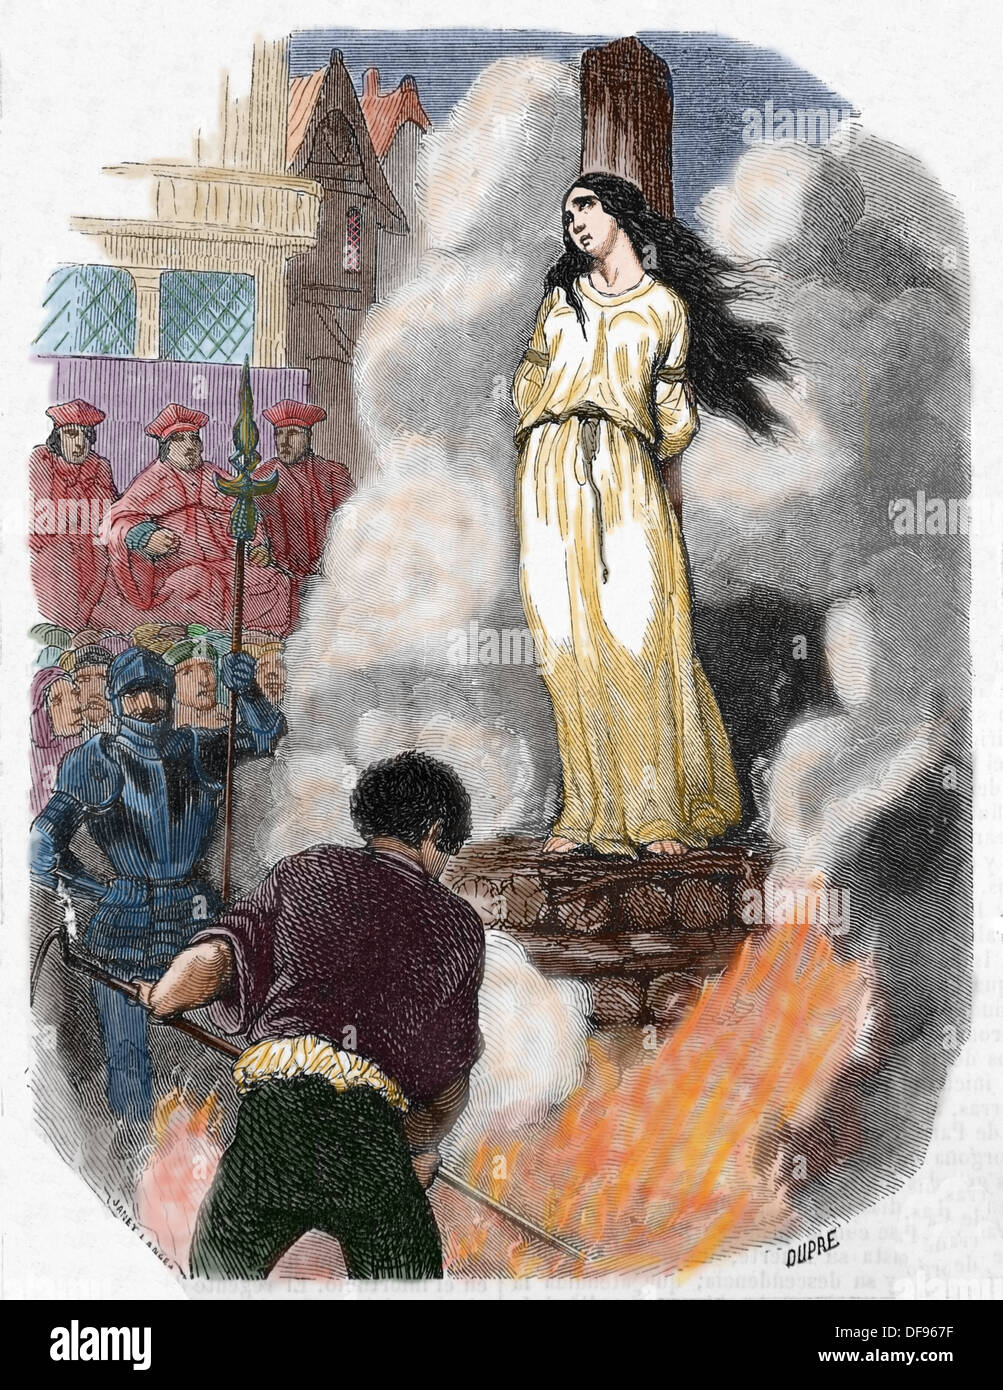 Jeanne d'Arc (1412-1431), surnommée "la pucelle d'orléans', est une héroïne folklorique de France et d'un saint catholique. La gravure. Banque D'Images